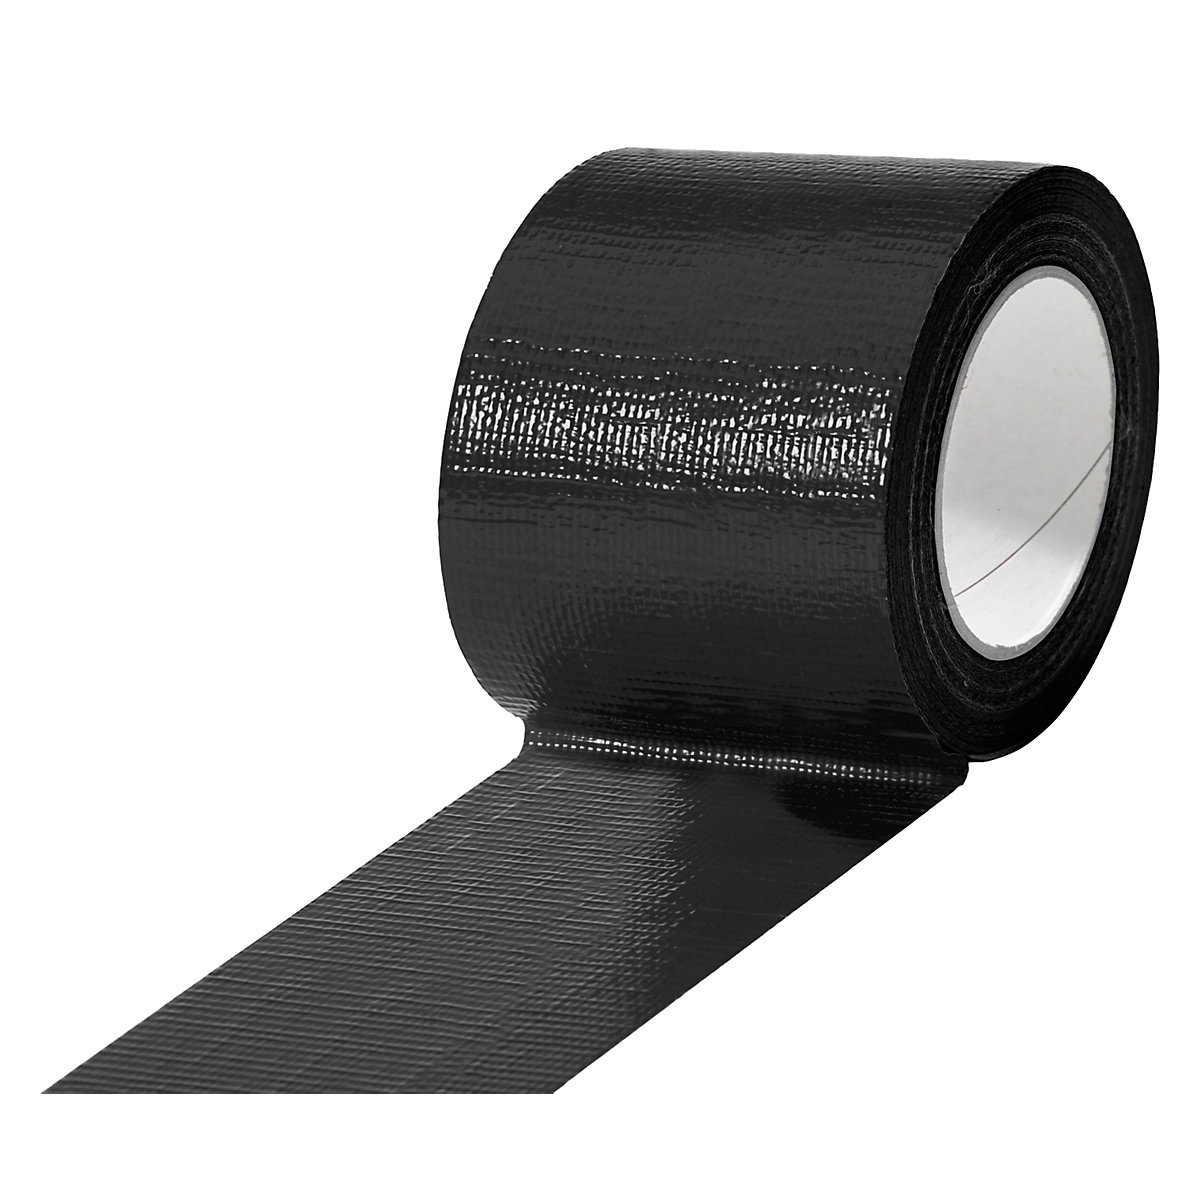 Traka od tkanine, u različitim bojama, pak. 12 rola, u crnoj boji, širina trake 75 mm